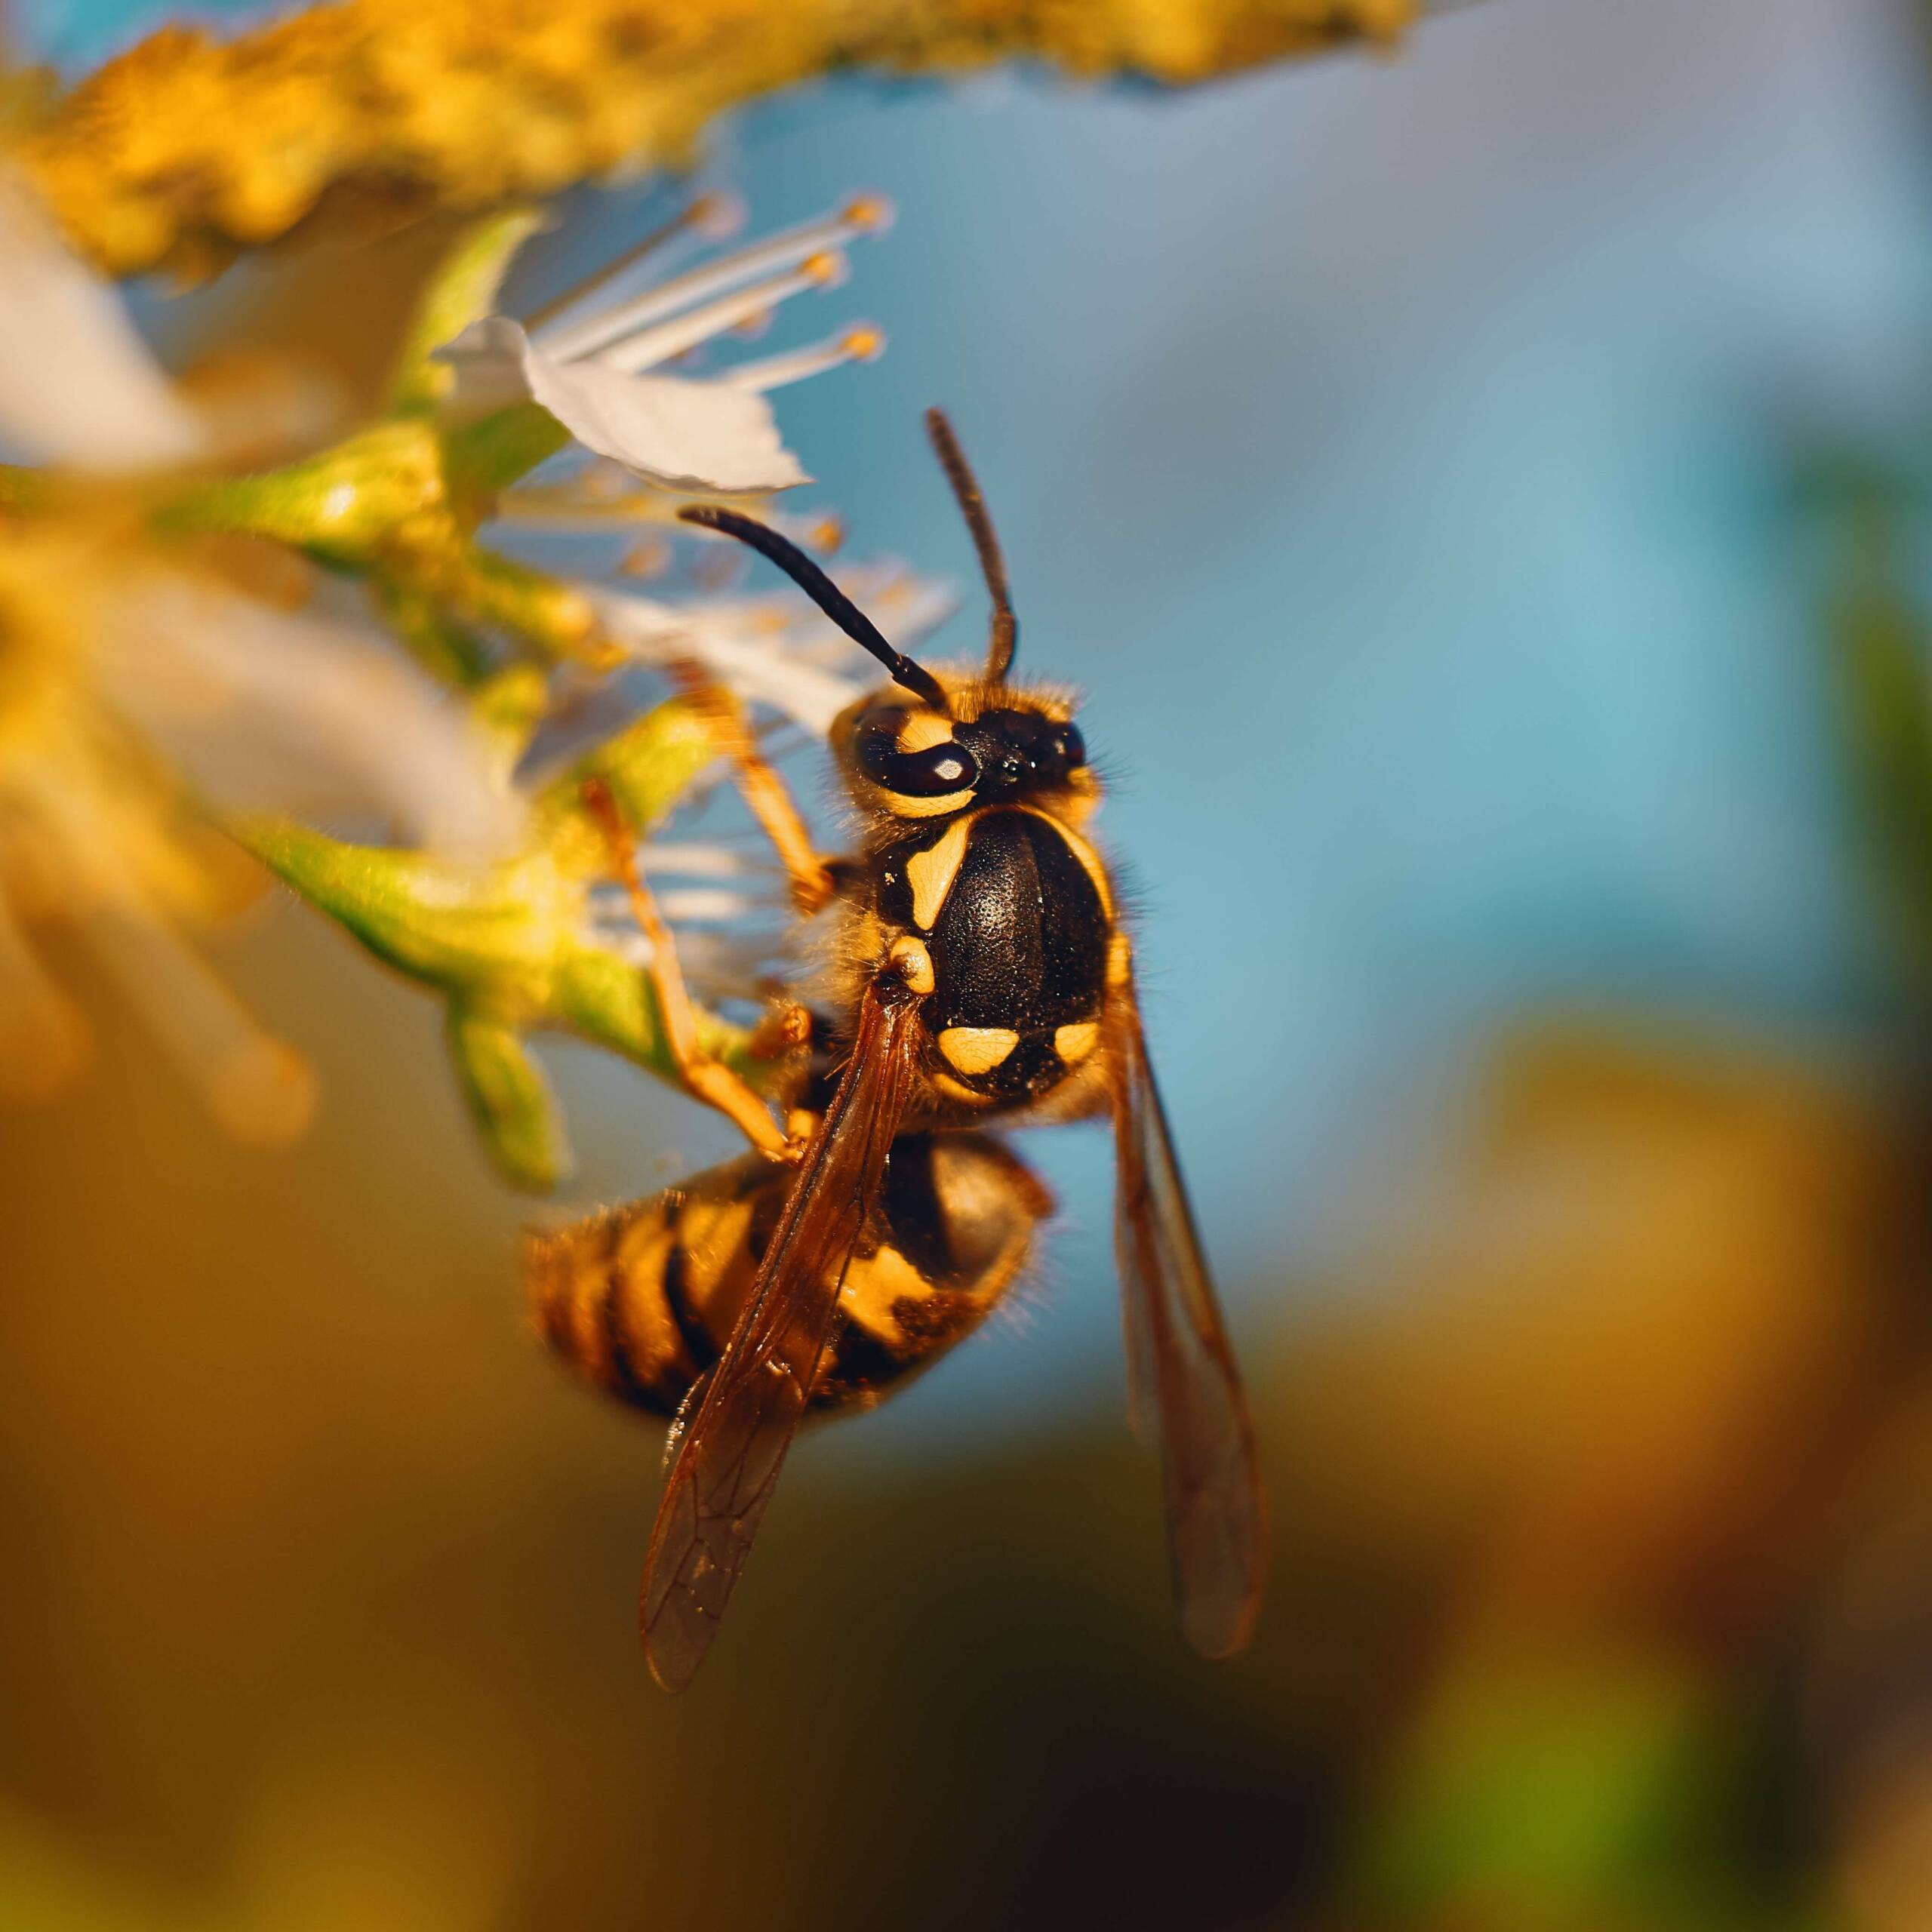 A méhek és darazsak csípése által a szervezetbe juttatott méreganyag az arra érzékenyeknél heves allergiás reakciót válthat ki.